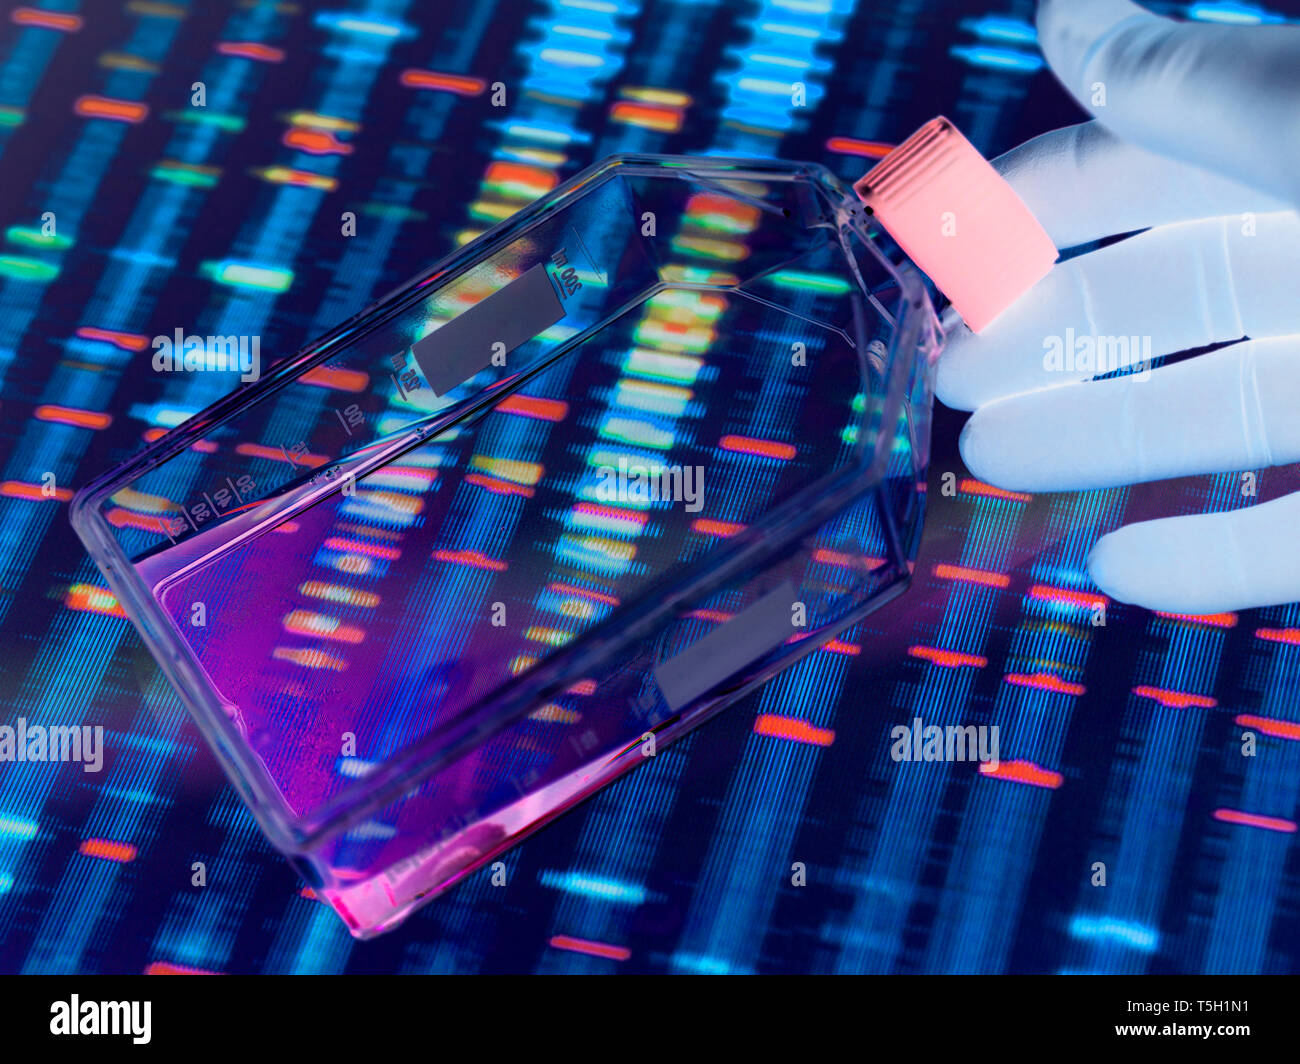 Le génie génétique, les cellules de visualisation scientifique dans une culture avec un adulte de l'ADN sur un écran à l'arrière-plan illustrant la modification génétique Banque D'Images